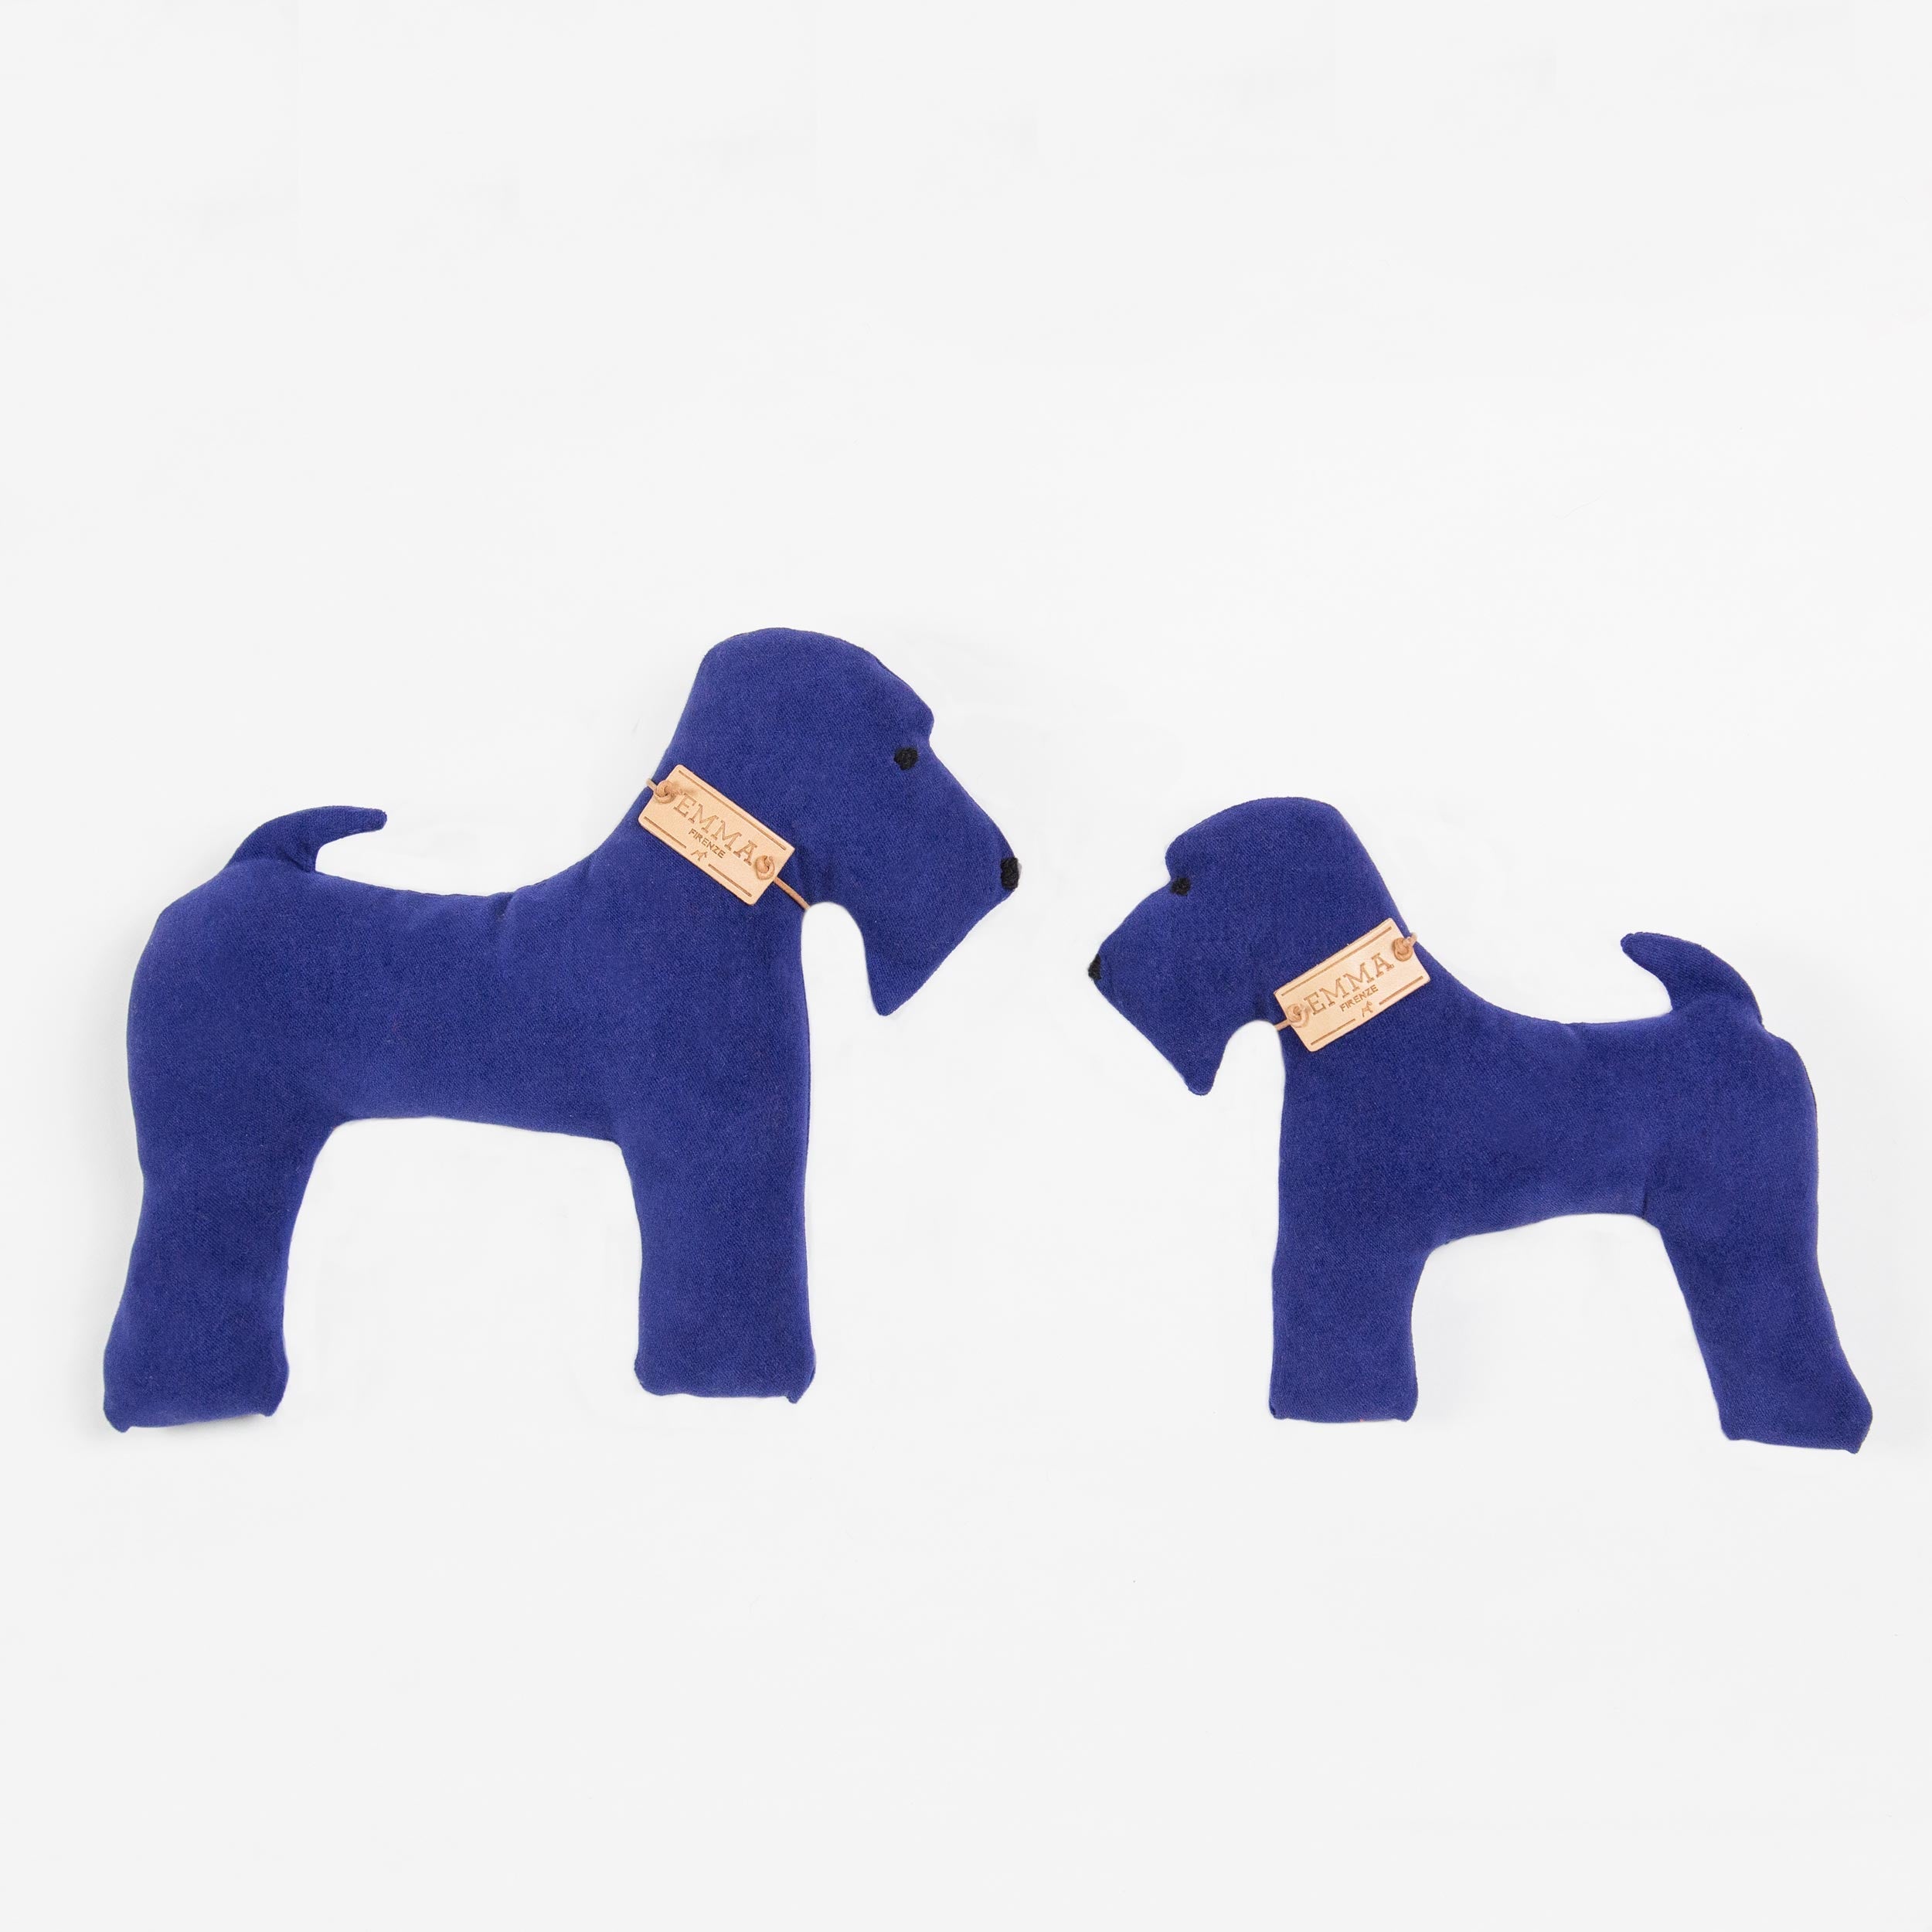 Gift Toy In Blue Moleskin Fabric Emma Firenze